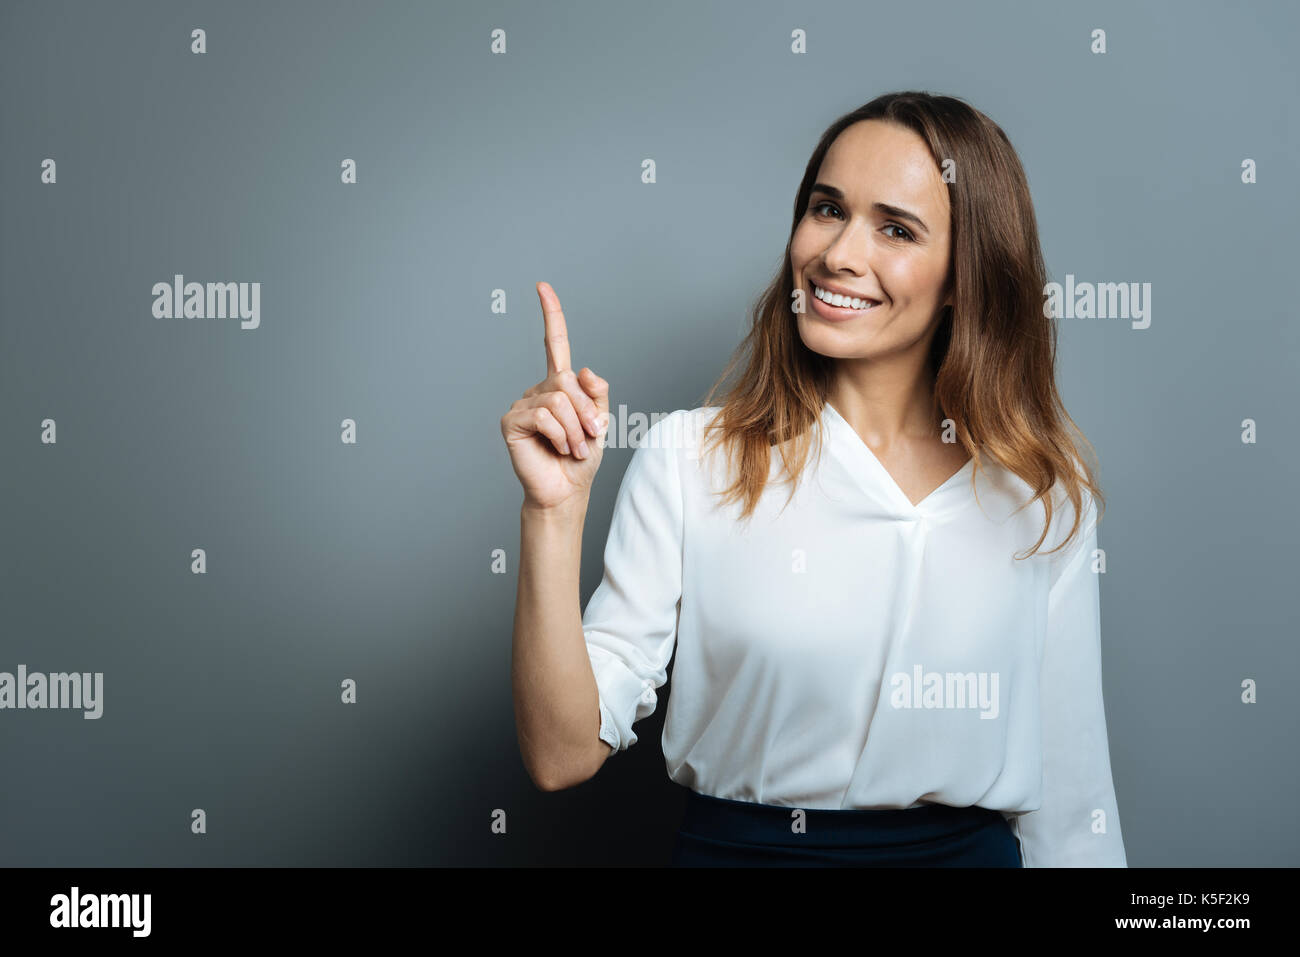 Femme heureuse joyeuse avec son doigt pointé vers le haut Banque D'Images